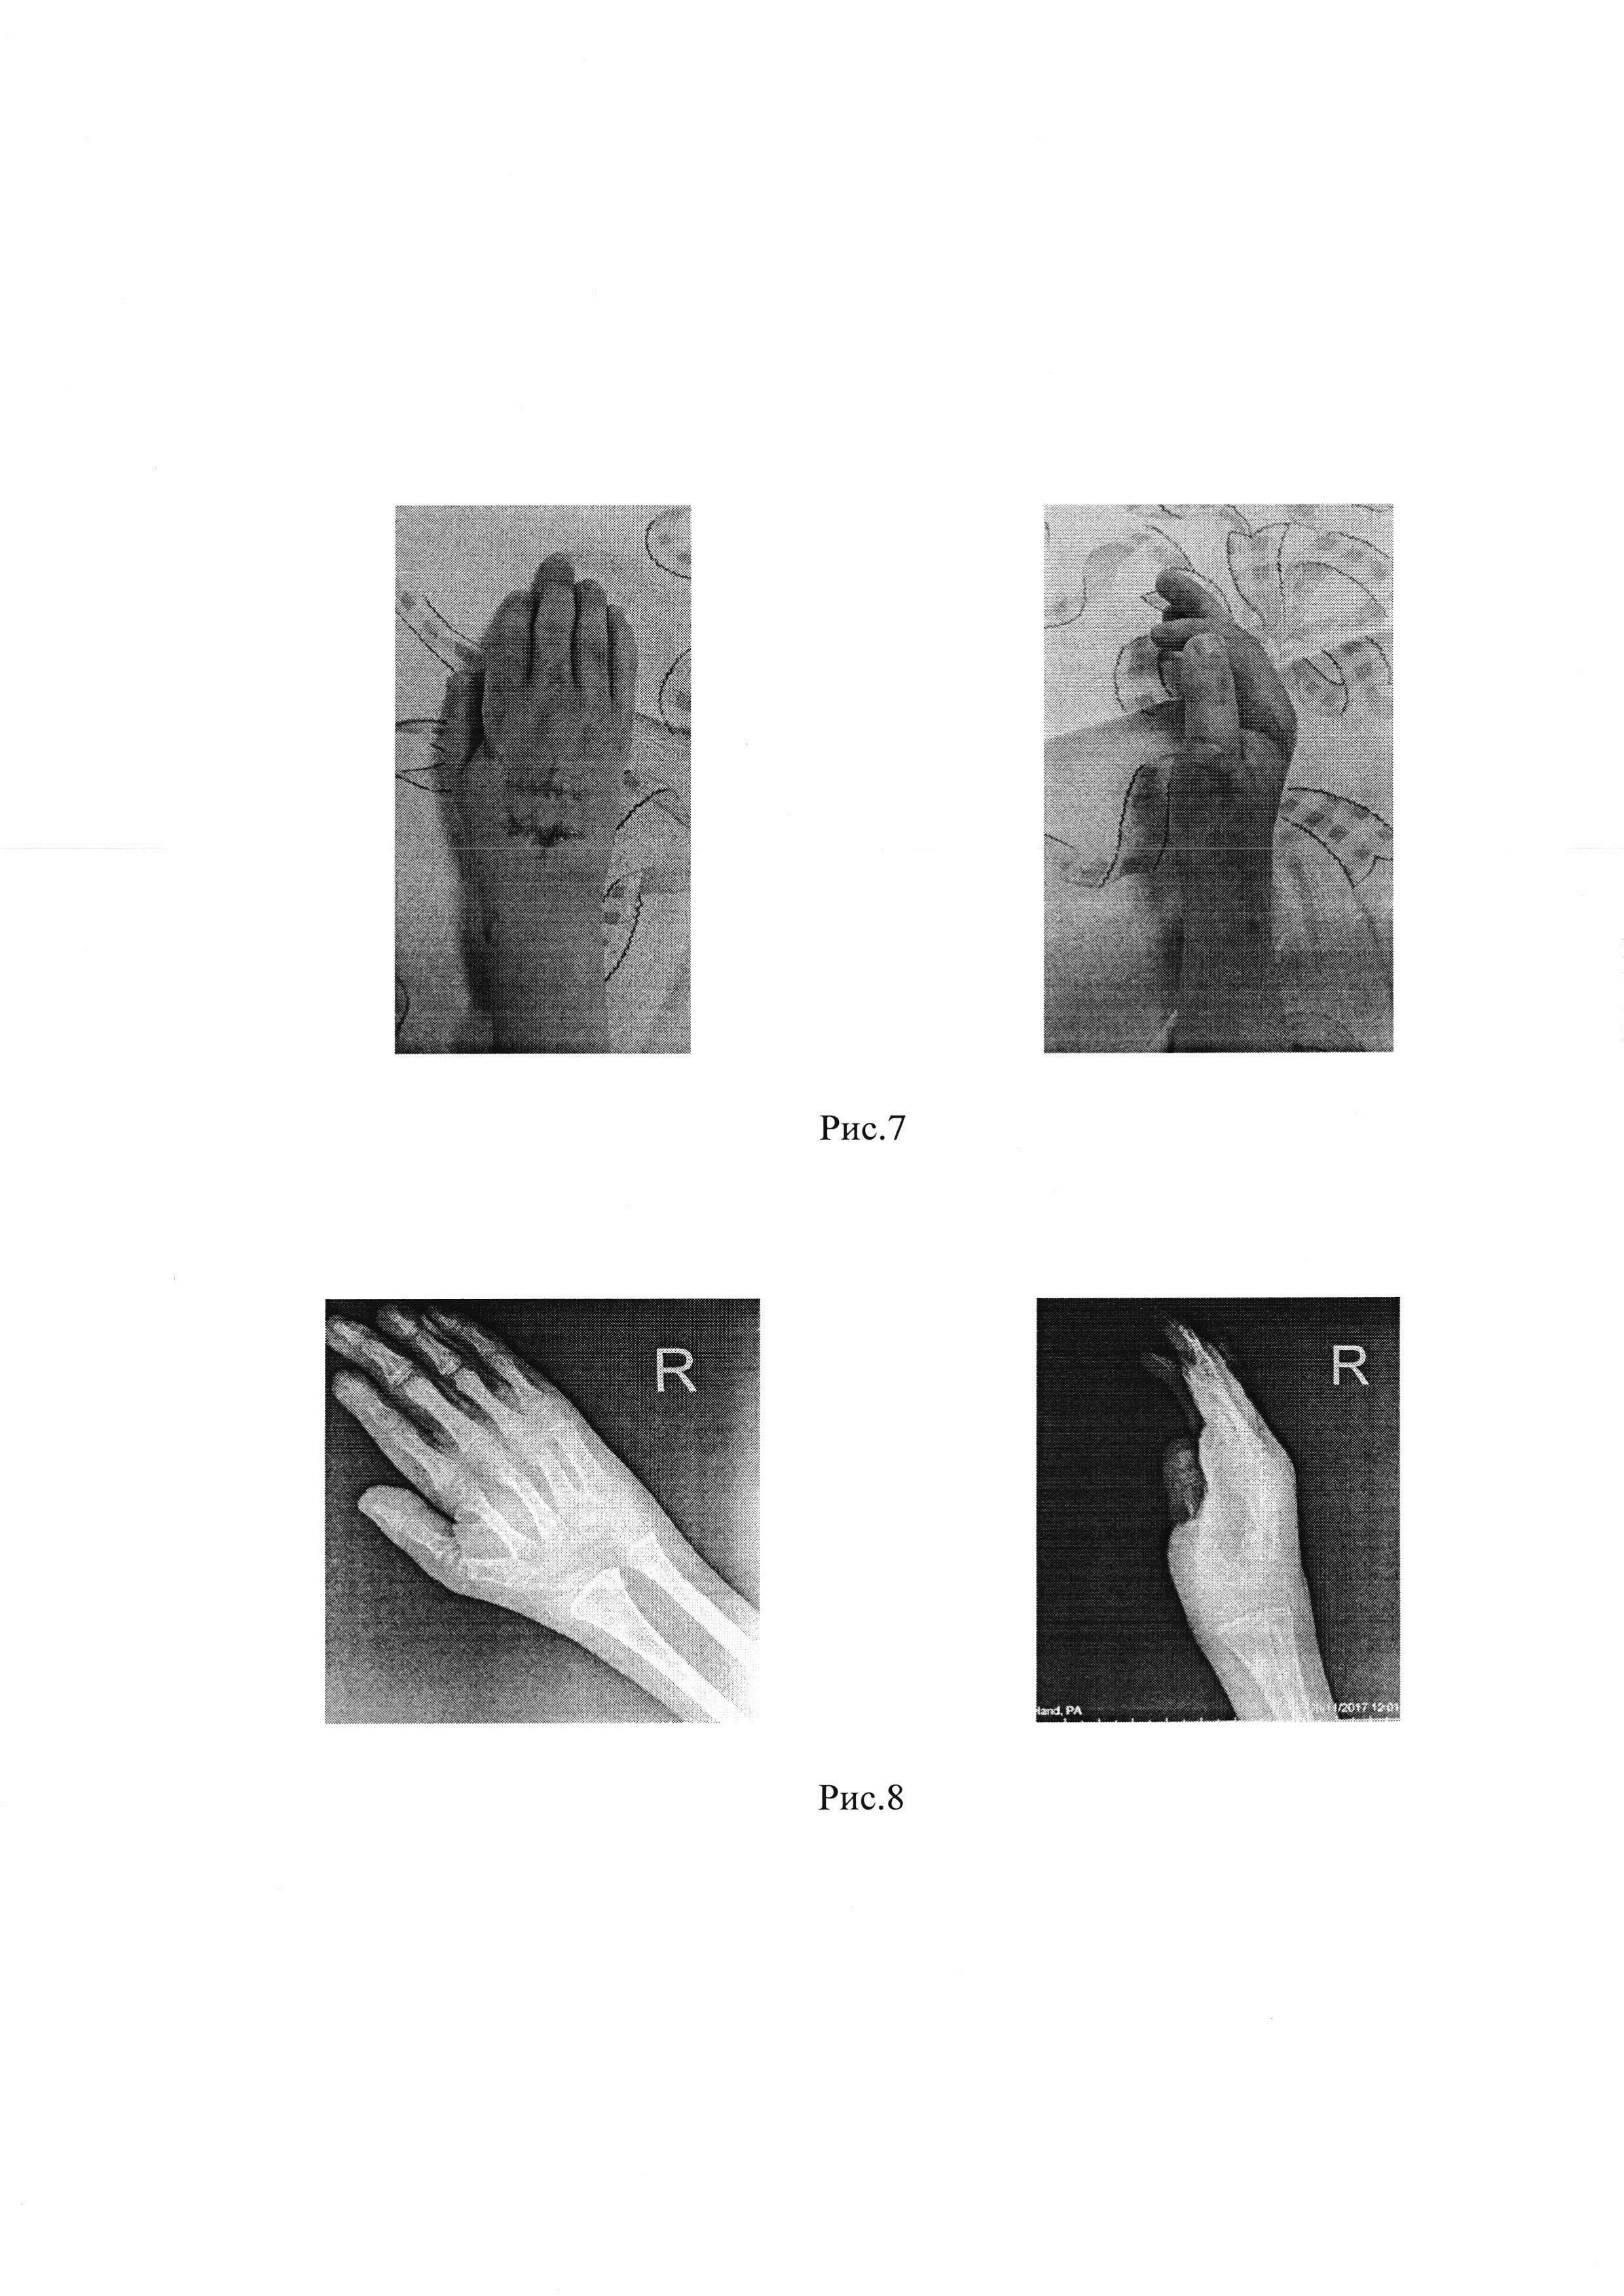 Способ одновременной коррекции разгибательной контрактуры лучезапястного сустава тяжелой степени и сгибательных контрактур пястно-фаланговых суставов II-IV пальцев кисти у детей с артрогрипозом